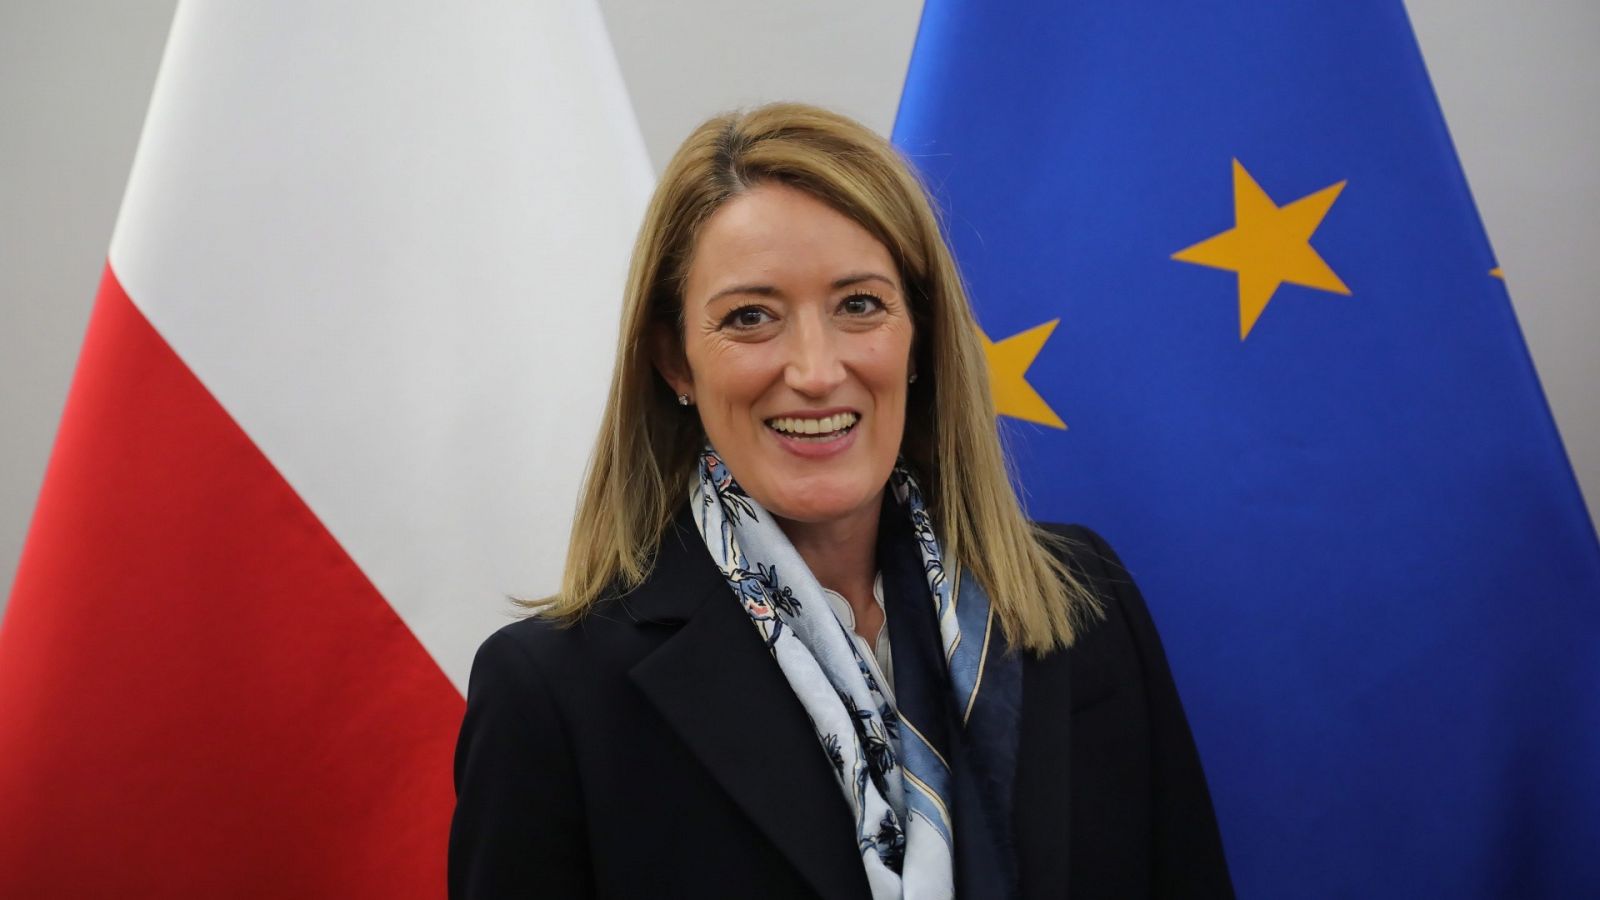 Imagen de archivo de Roberta Metsola, eurodiputada maltesa y favorita para ser la nueva presidenta del Parlamento Europeo. EFE/EPA/WOJCIECH OLKUSNIK